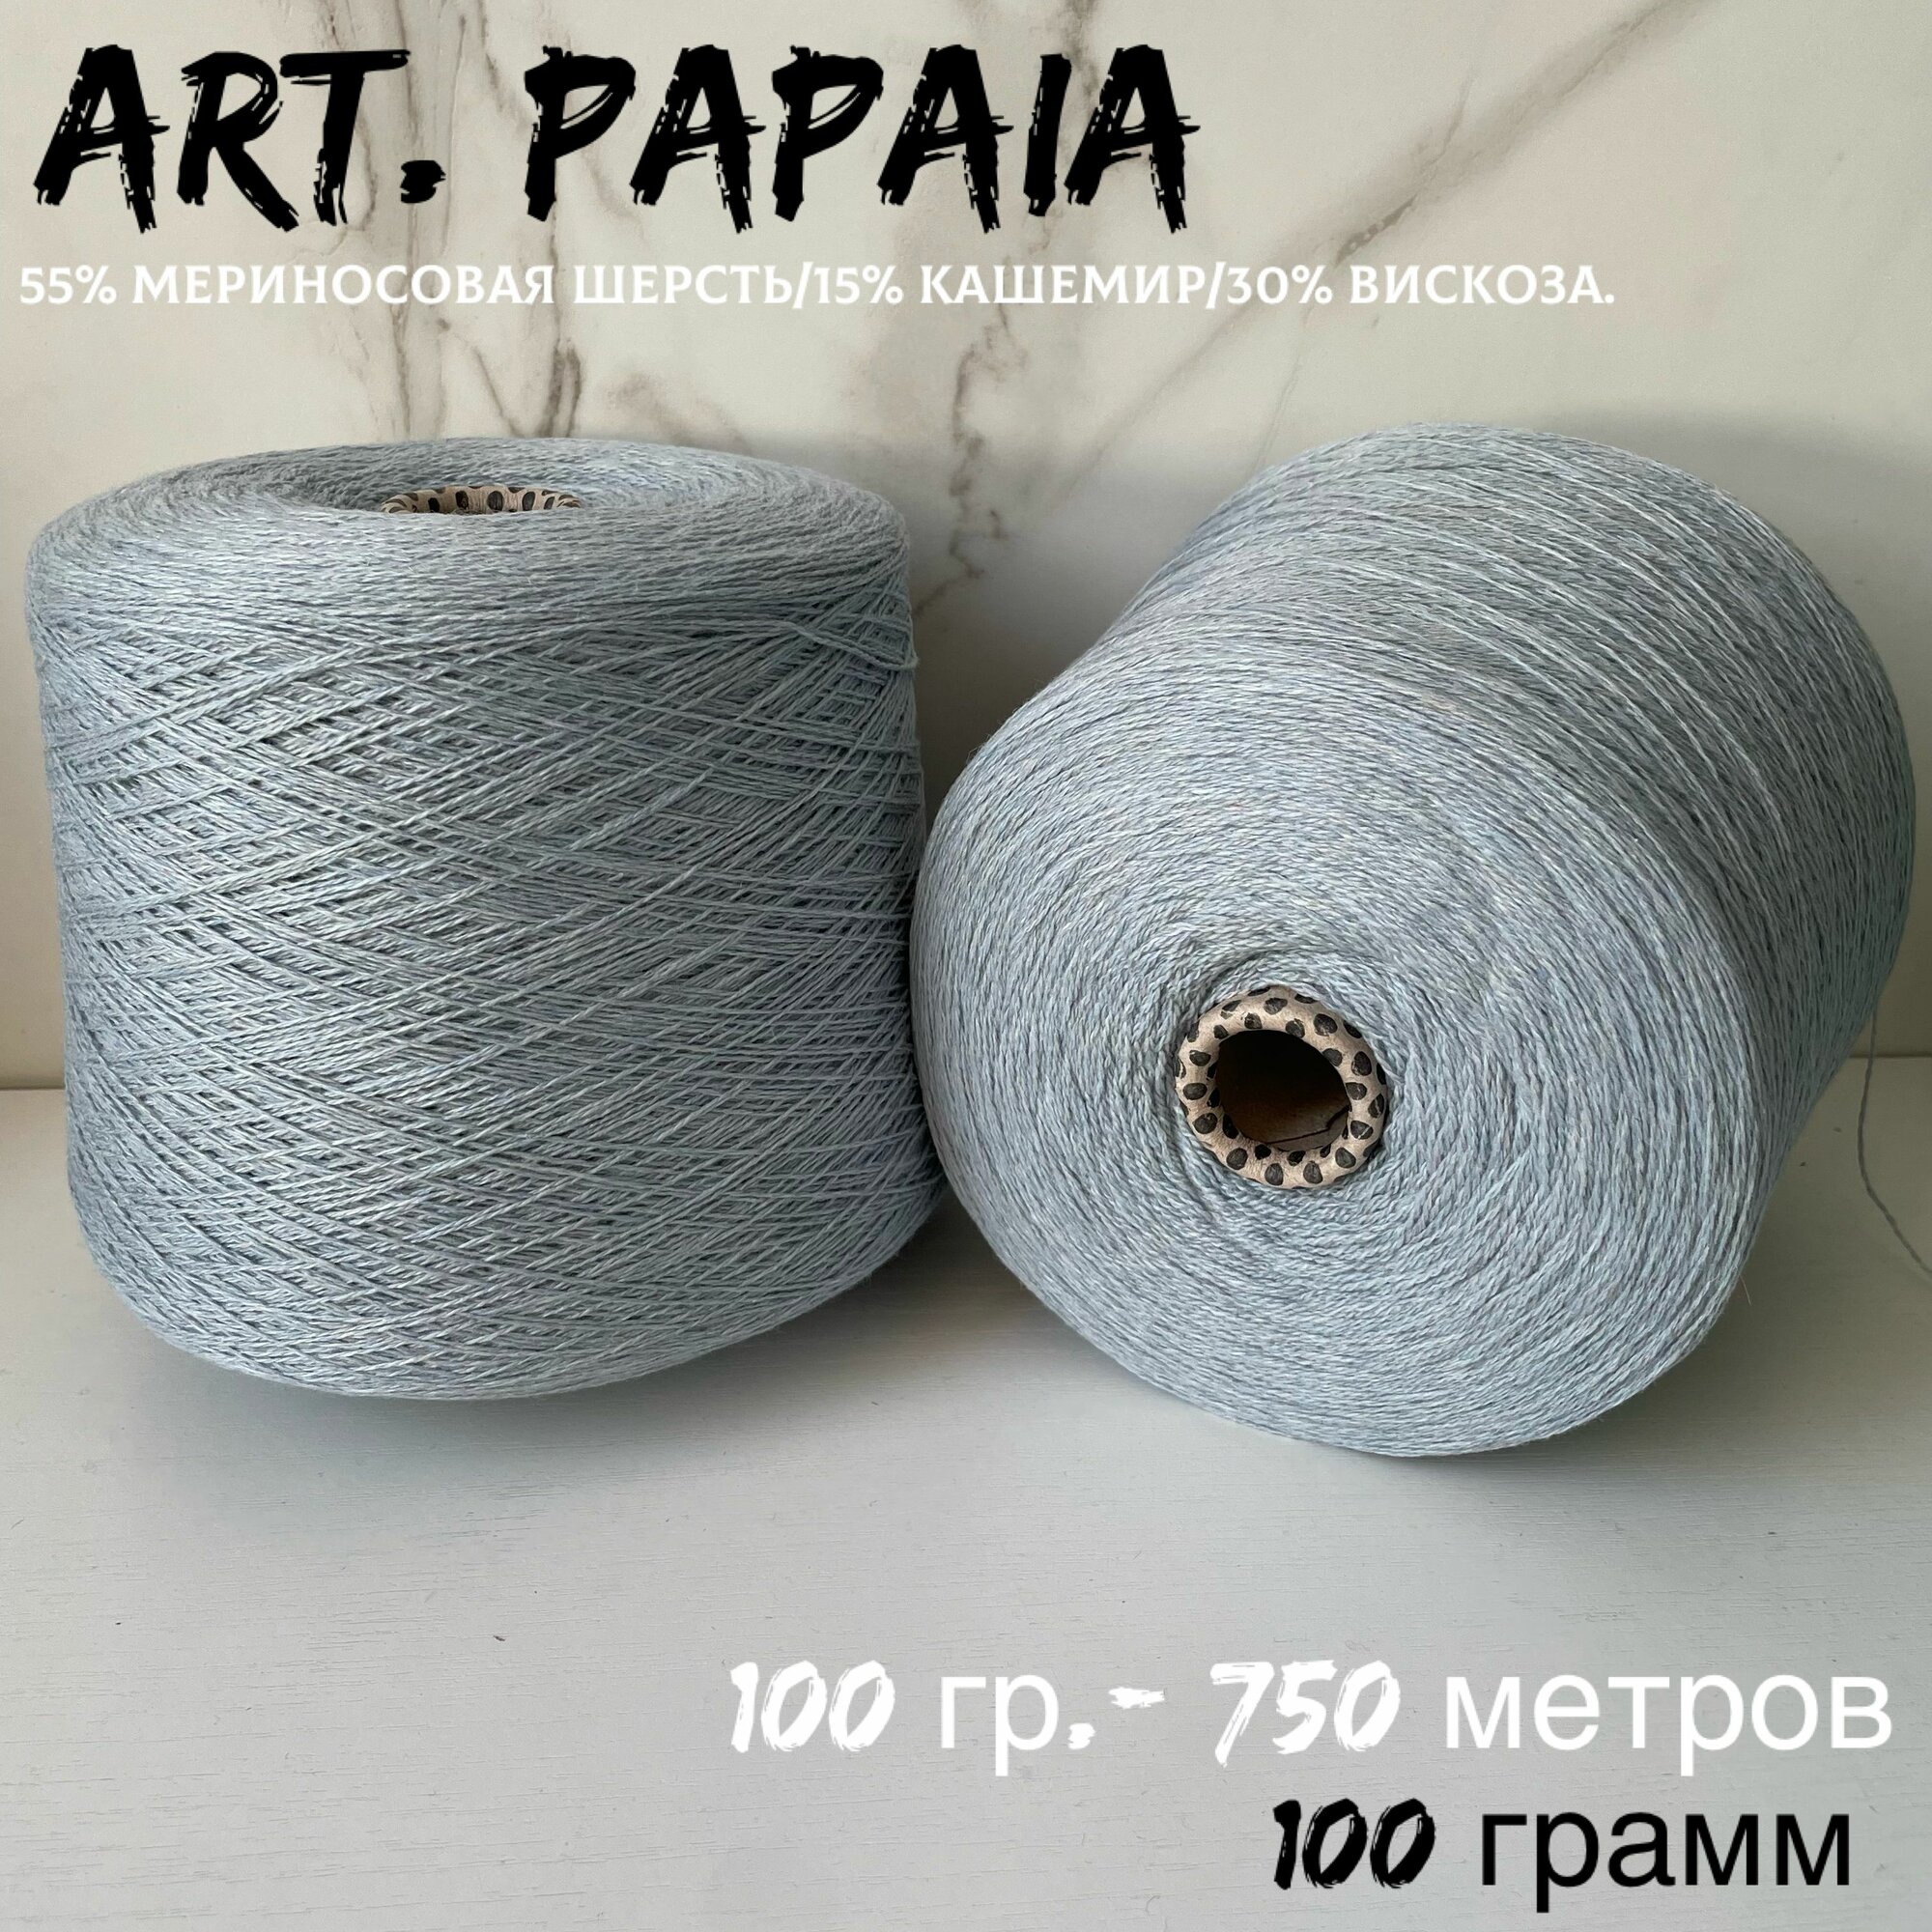 Итальянская бобинная пряжа для вязания PAPI FABIO art . PAPAIA - меринос/кашемир/вискоза, 100 грамм